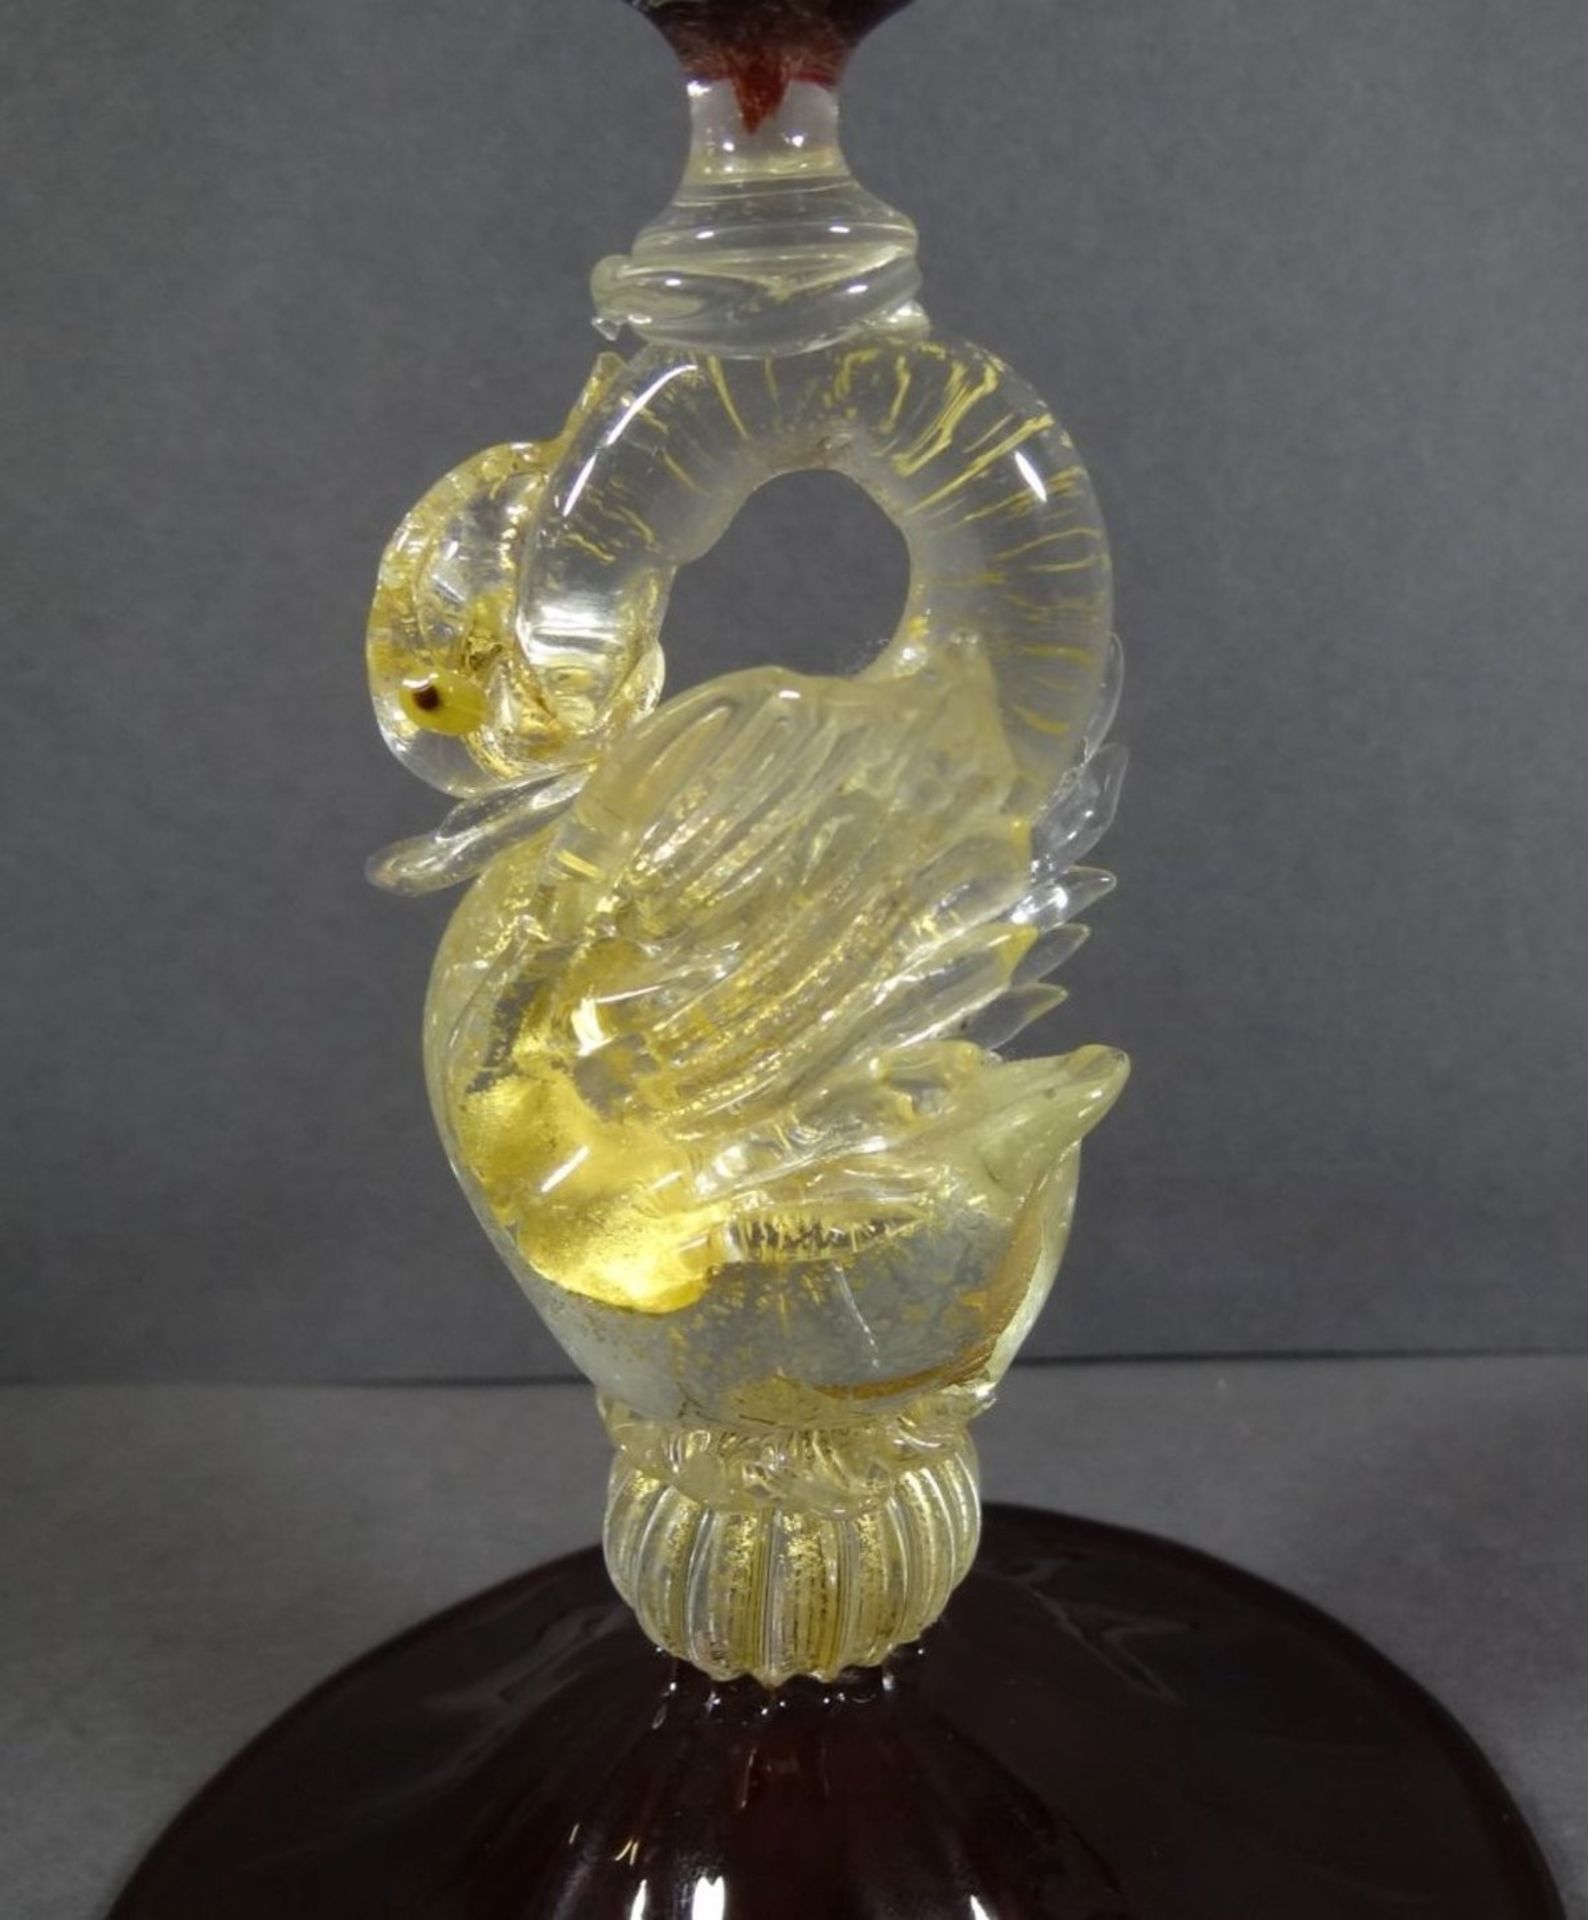 gr. Pokal "Murano" rotes Glas, Griff als Schwan, klar mit Goldflitter, H-21 cm - Bild 2 aus 6